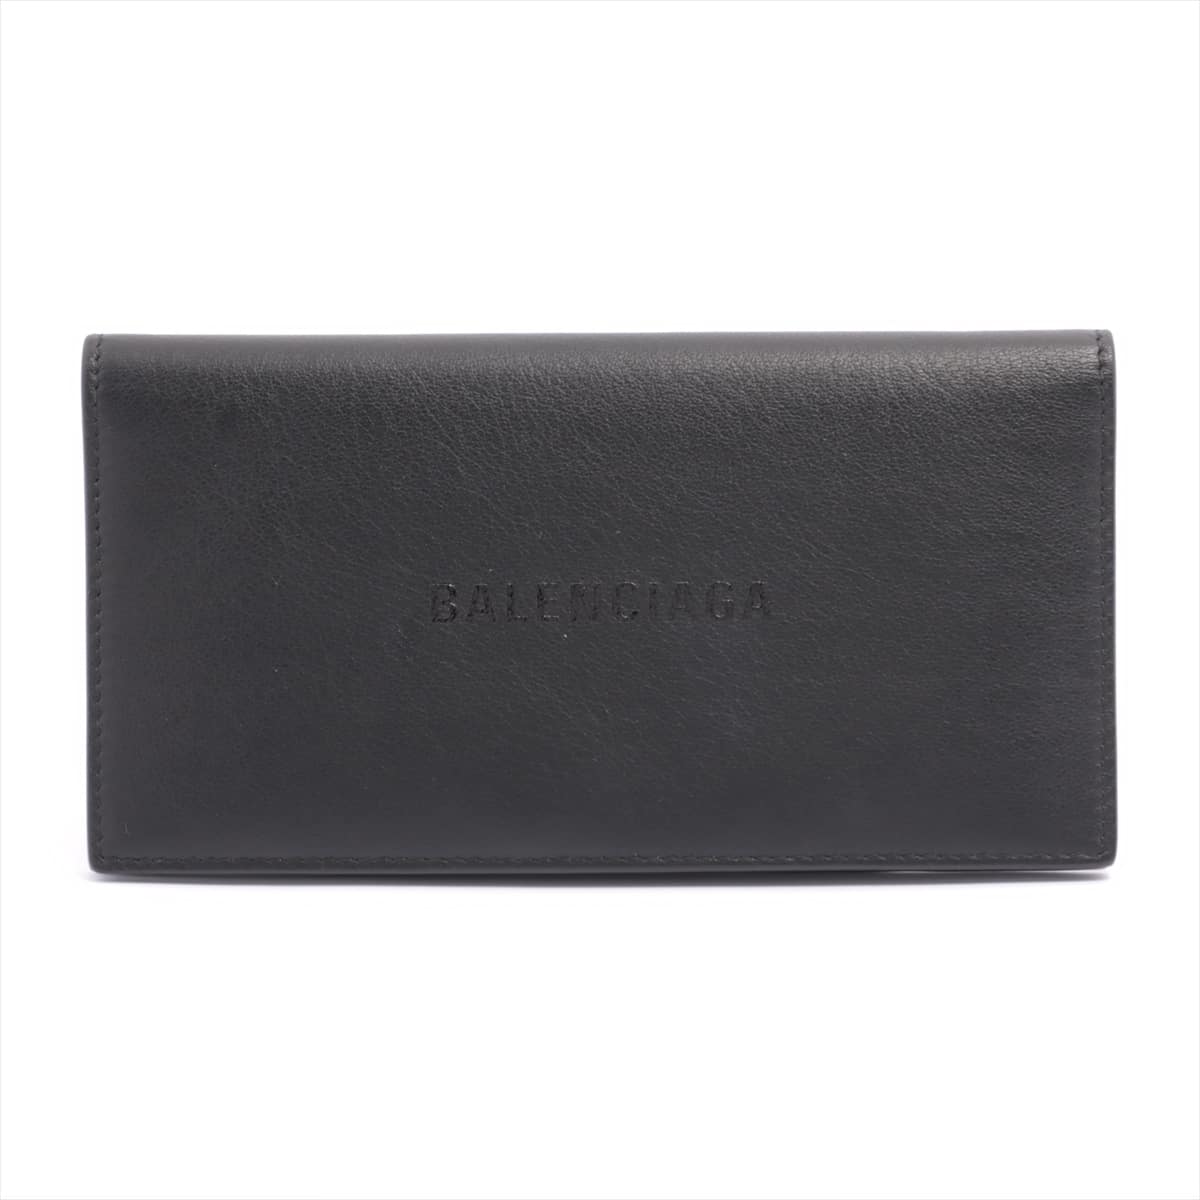 Balenciaga Logo 531522 Leather Wallet Black